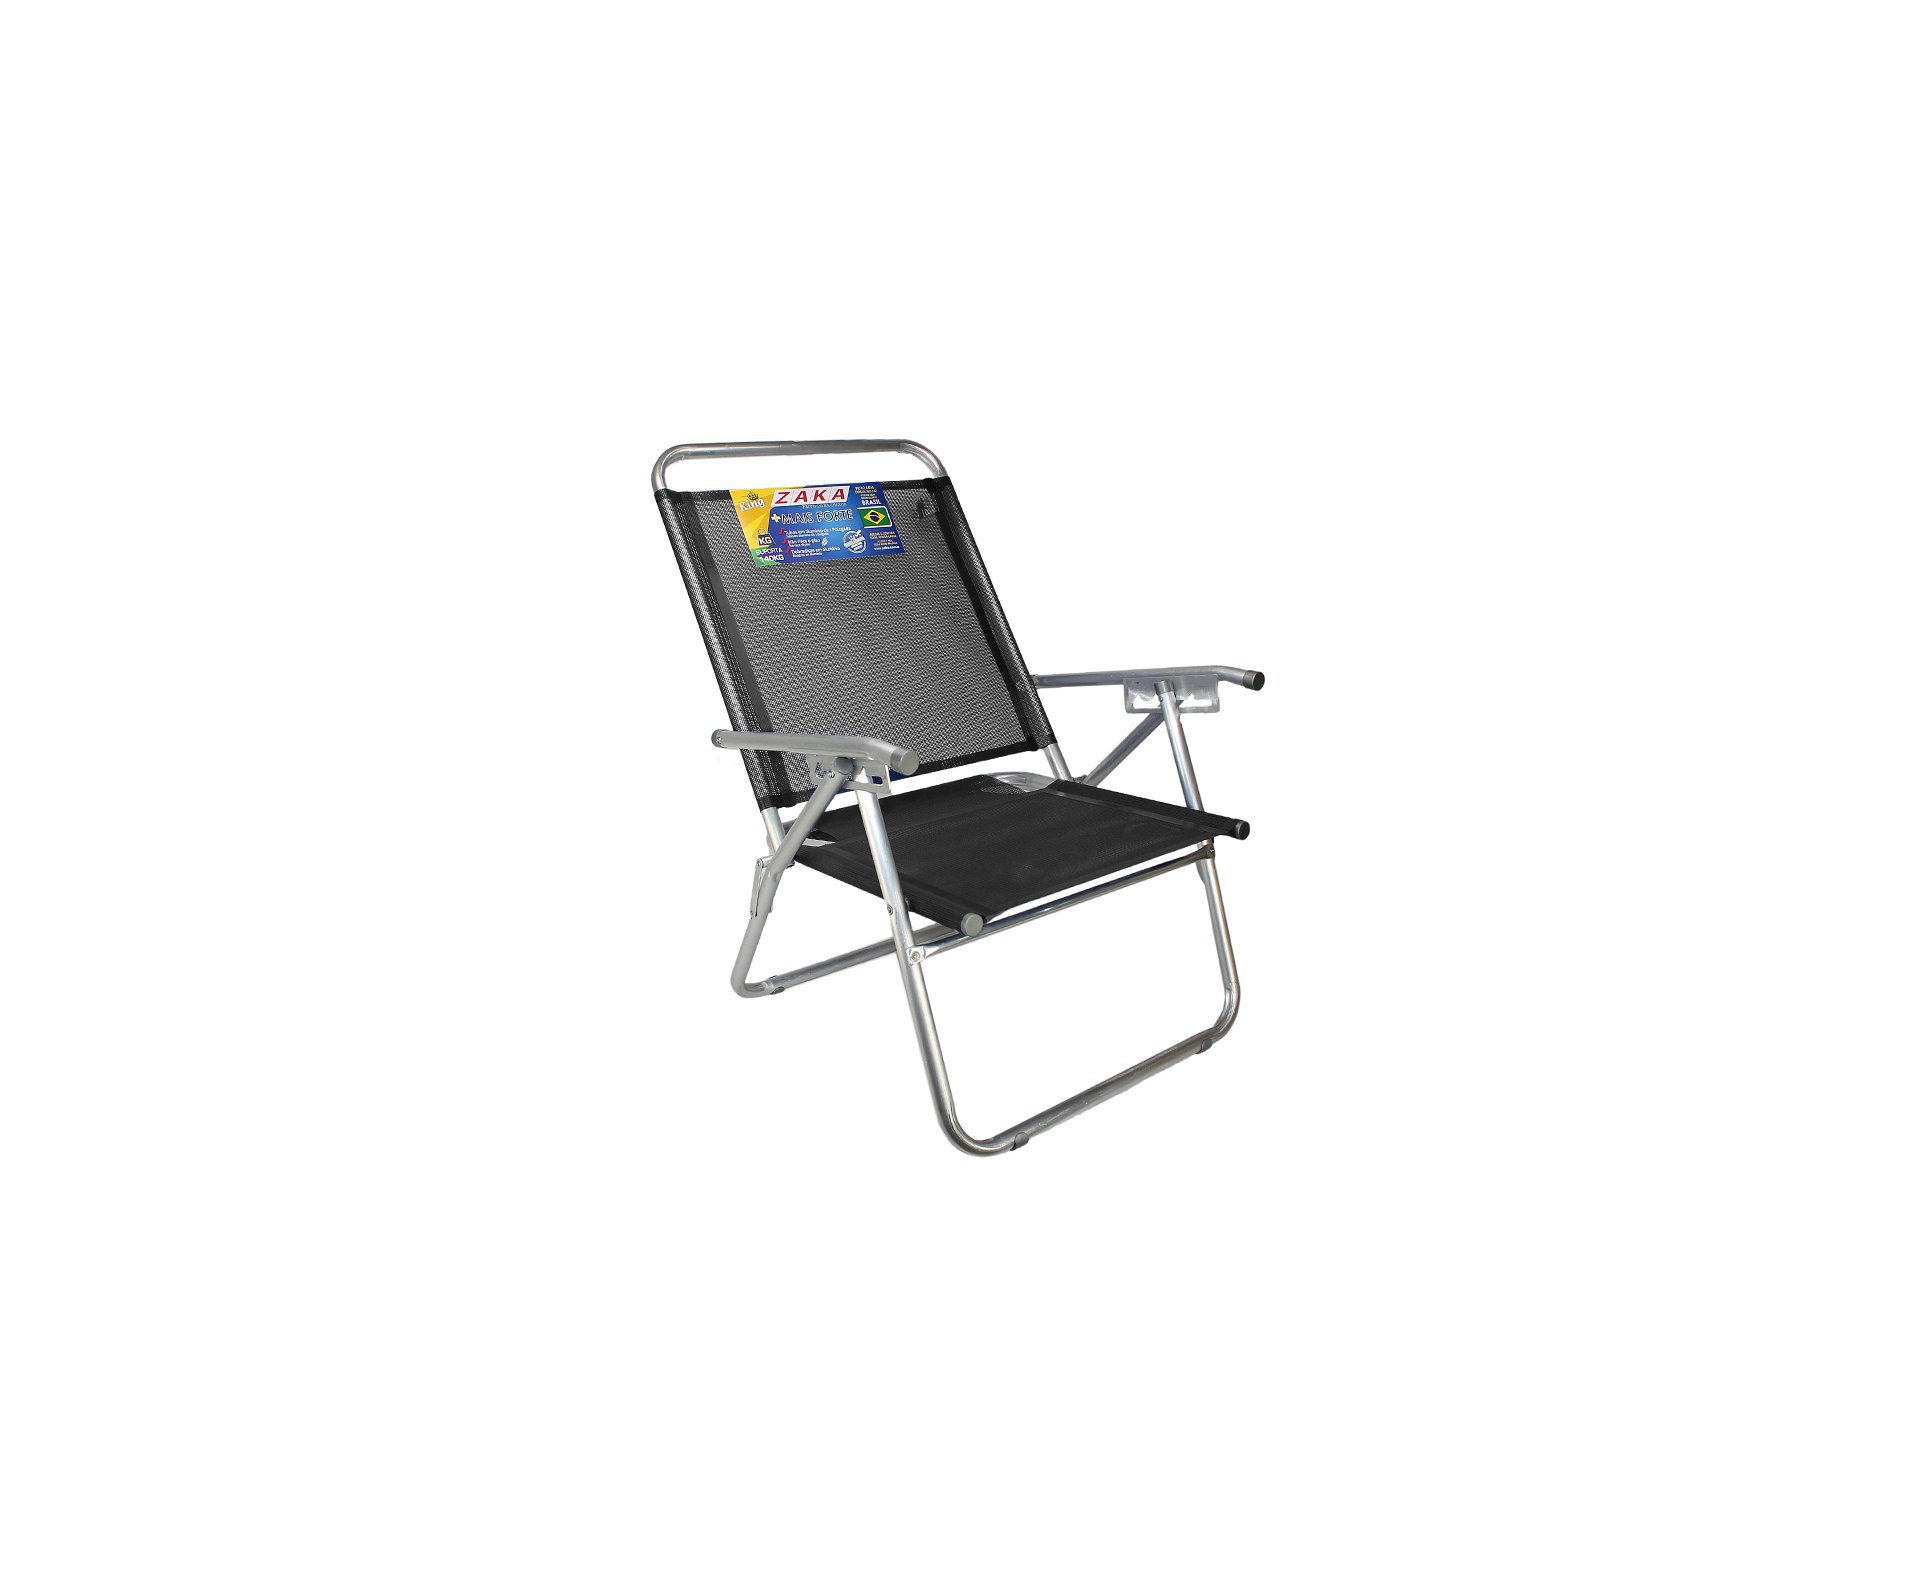 Cadeira De Praia Em Aluminio Zaka King Reclinável Preta Capacidade 140kg